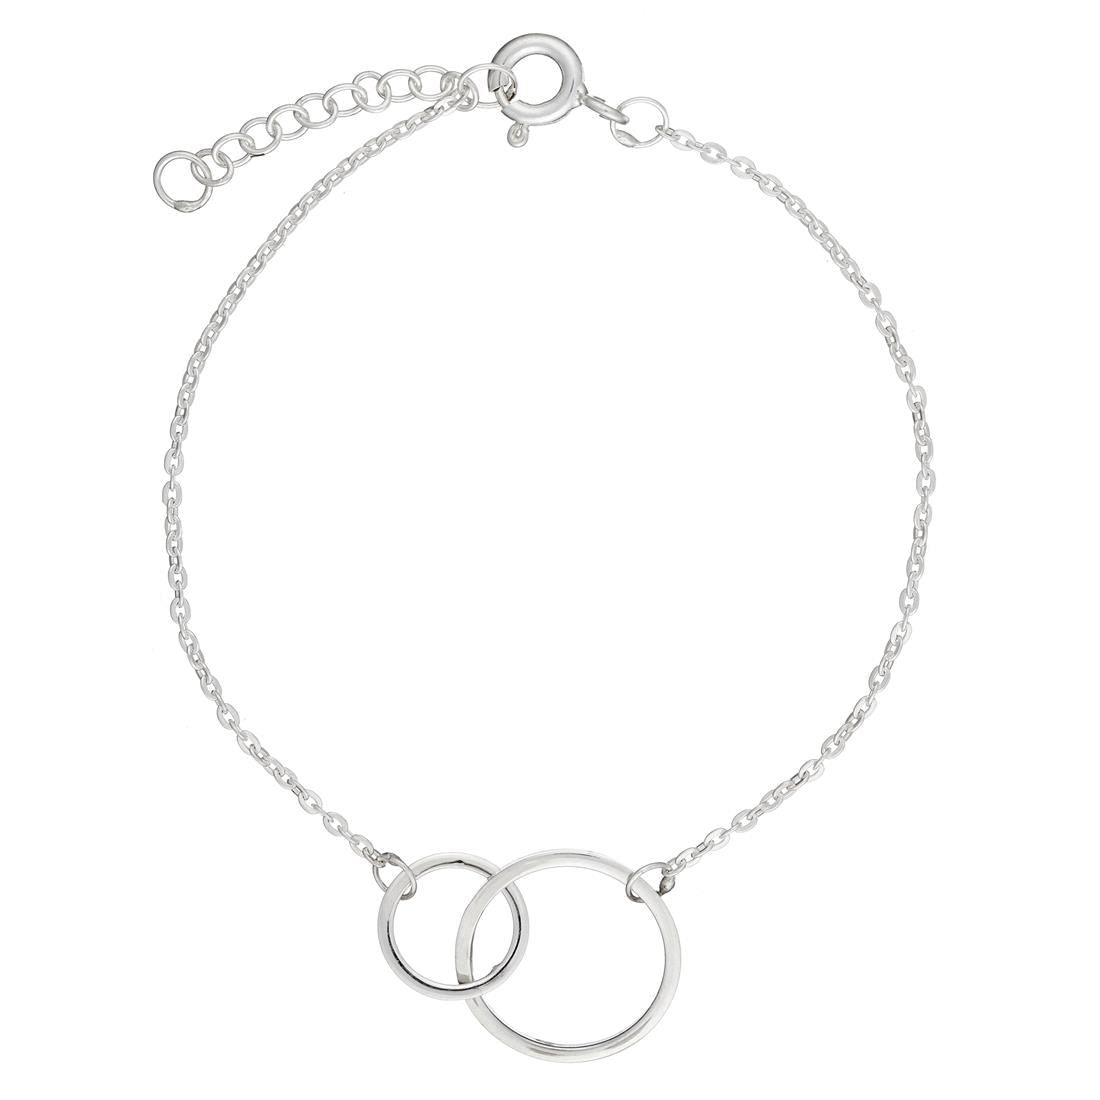 Sterling Silver Interlocking Hoops Link Chain Bracelet - Silverly